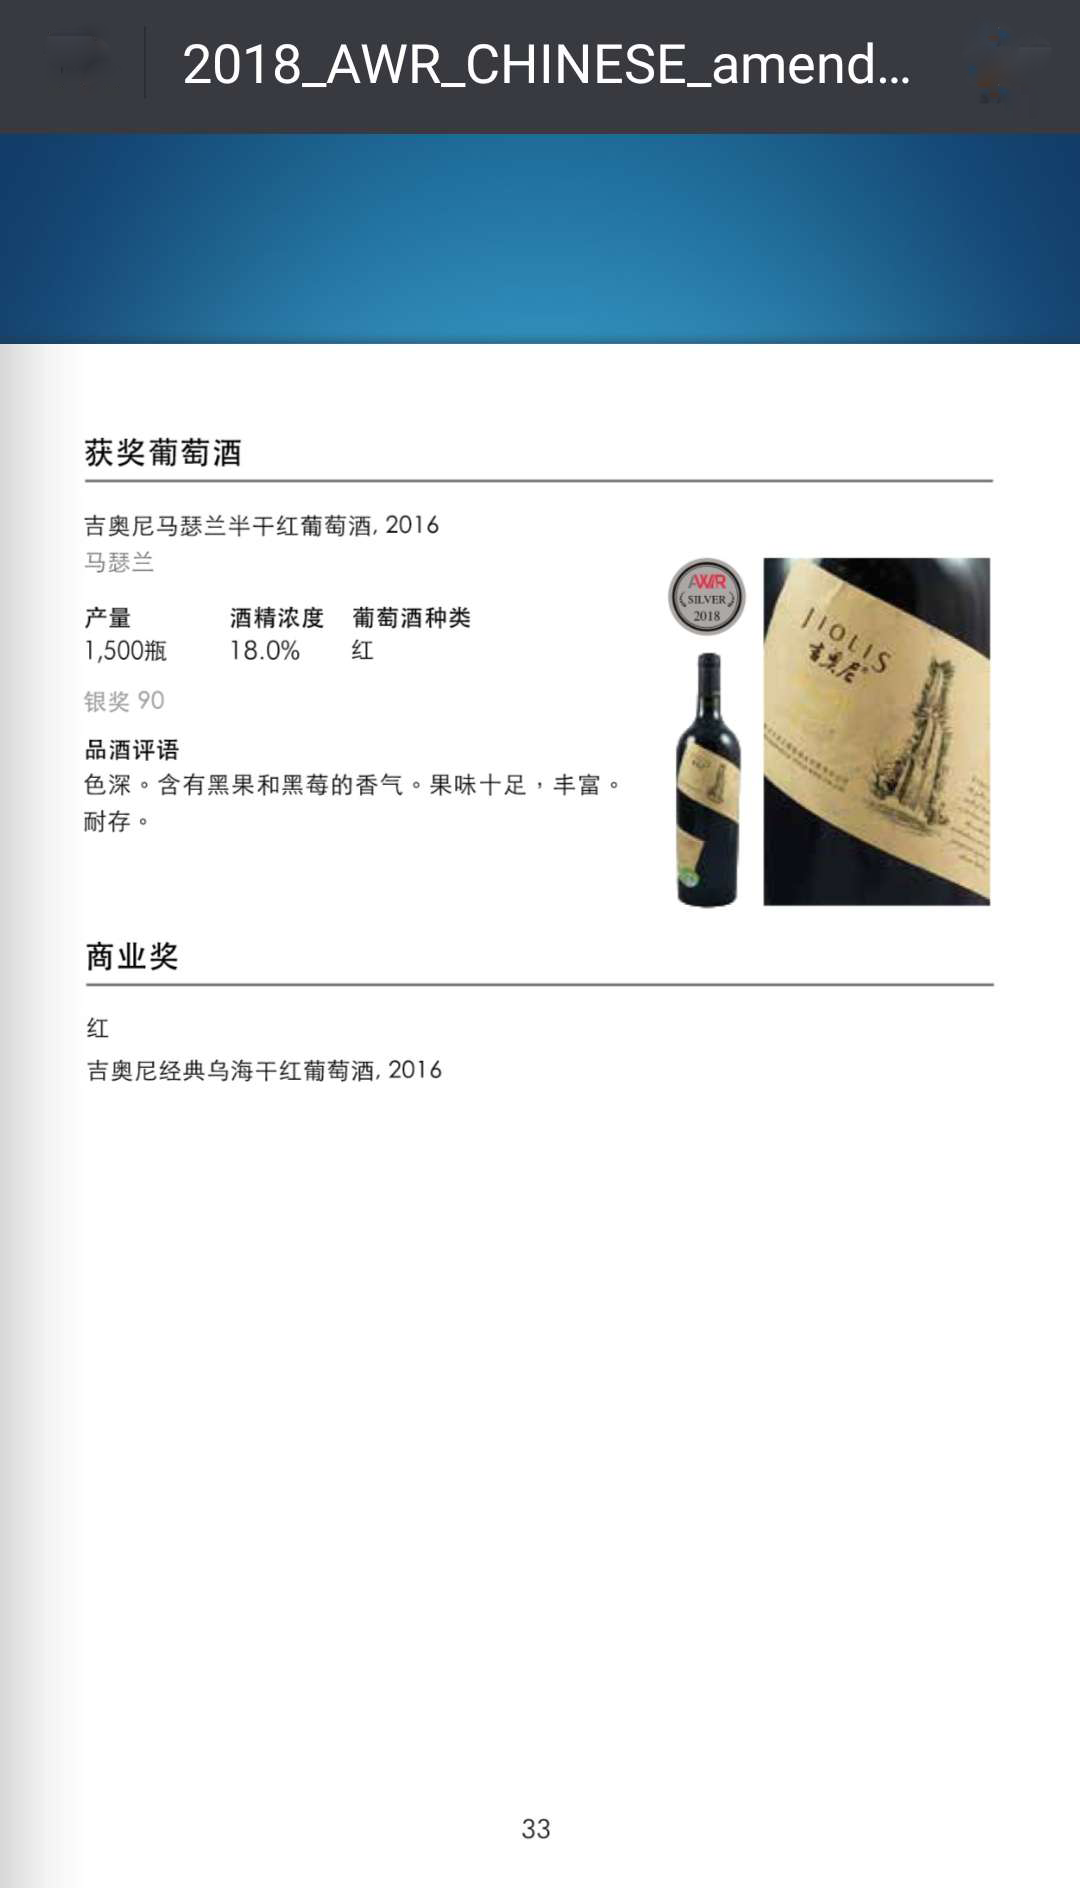 马瑟兰-荣获《亚洲葡萄酒指南》银奖.png